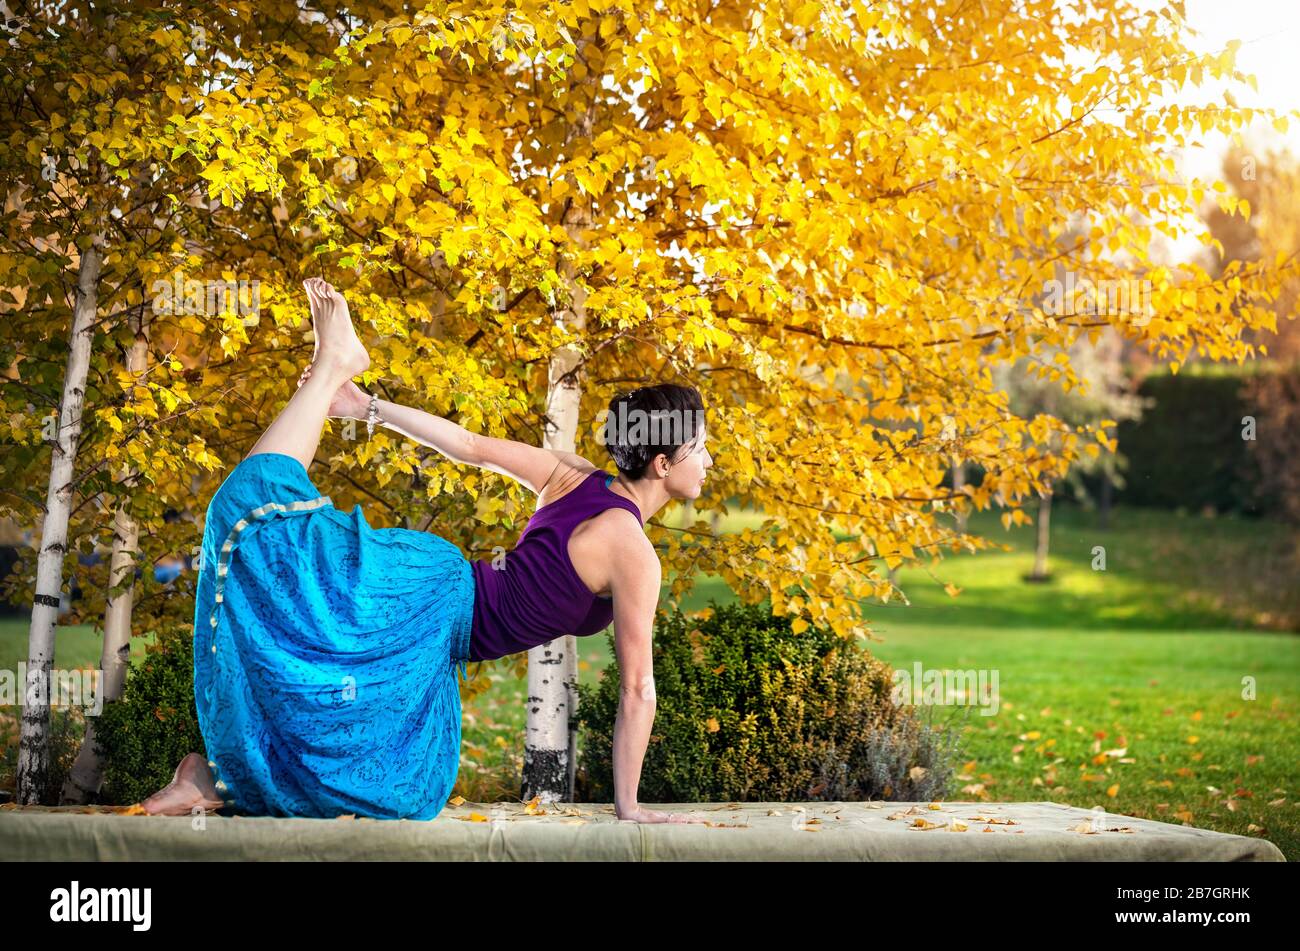 Junge Frau beim Yoga im Herbst Stadtpark in der Nähe von Birken gelb Stockfoto